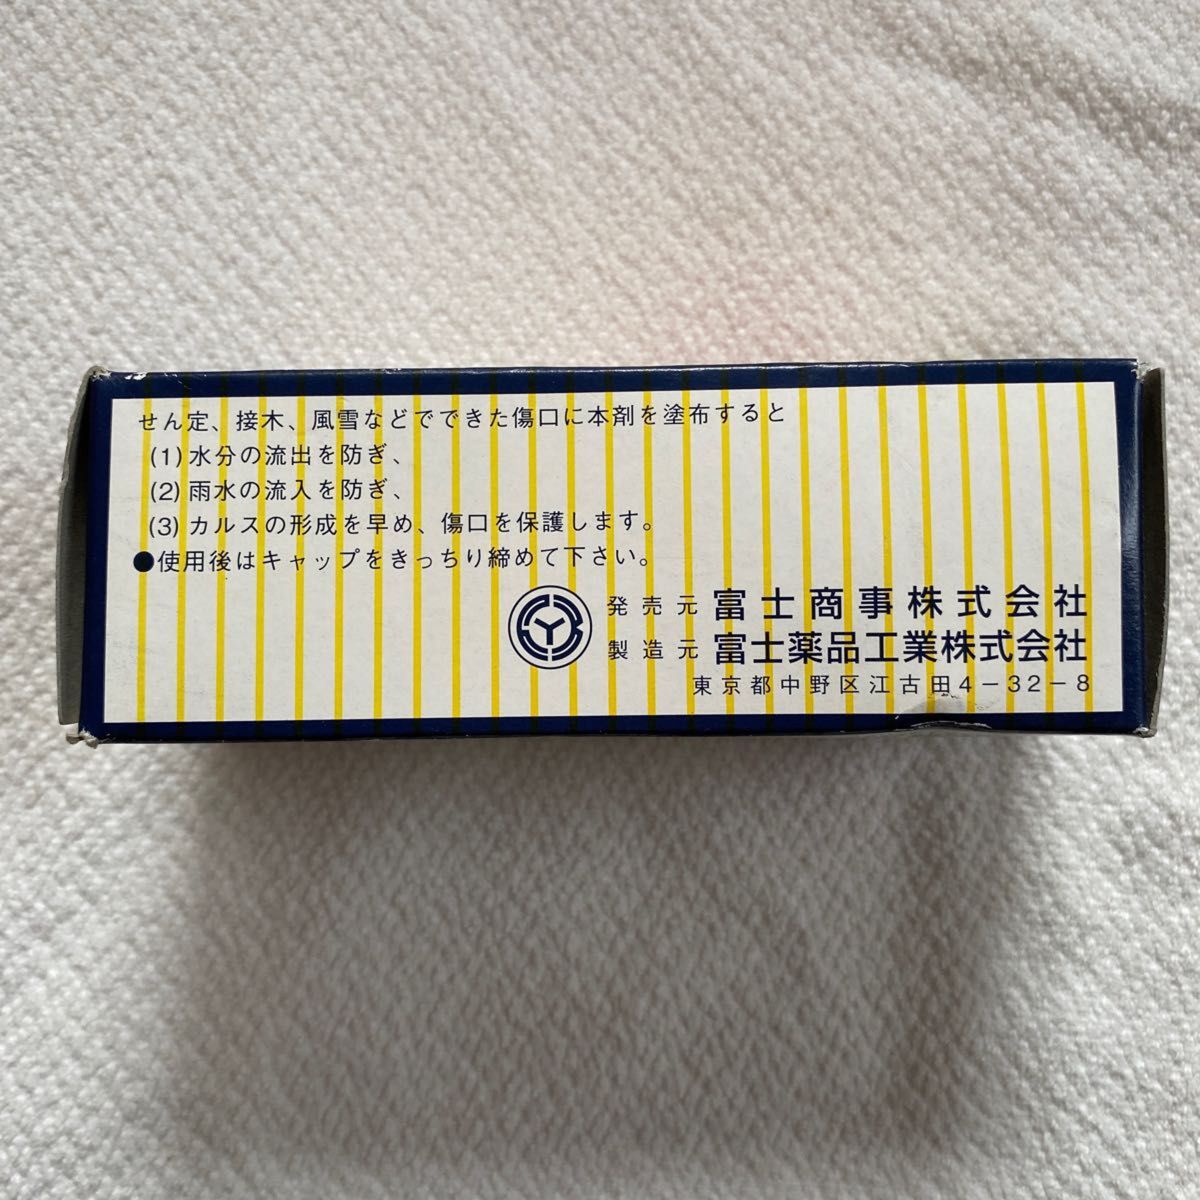 【農業 趣味 園芸】接木テープ3cm巾・癒合剤150gセット